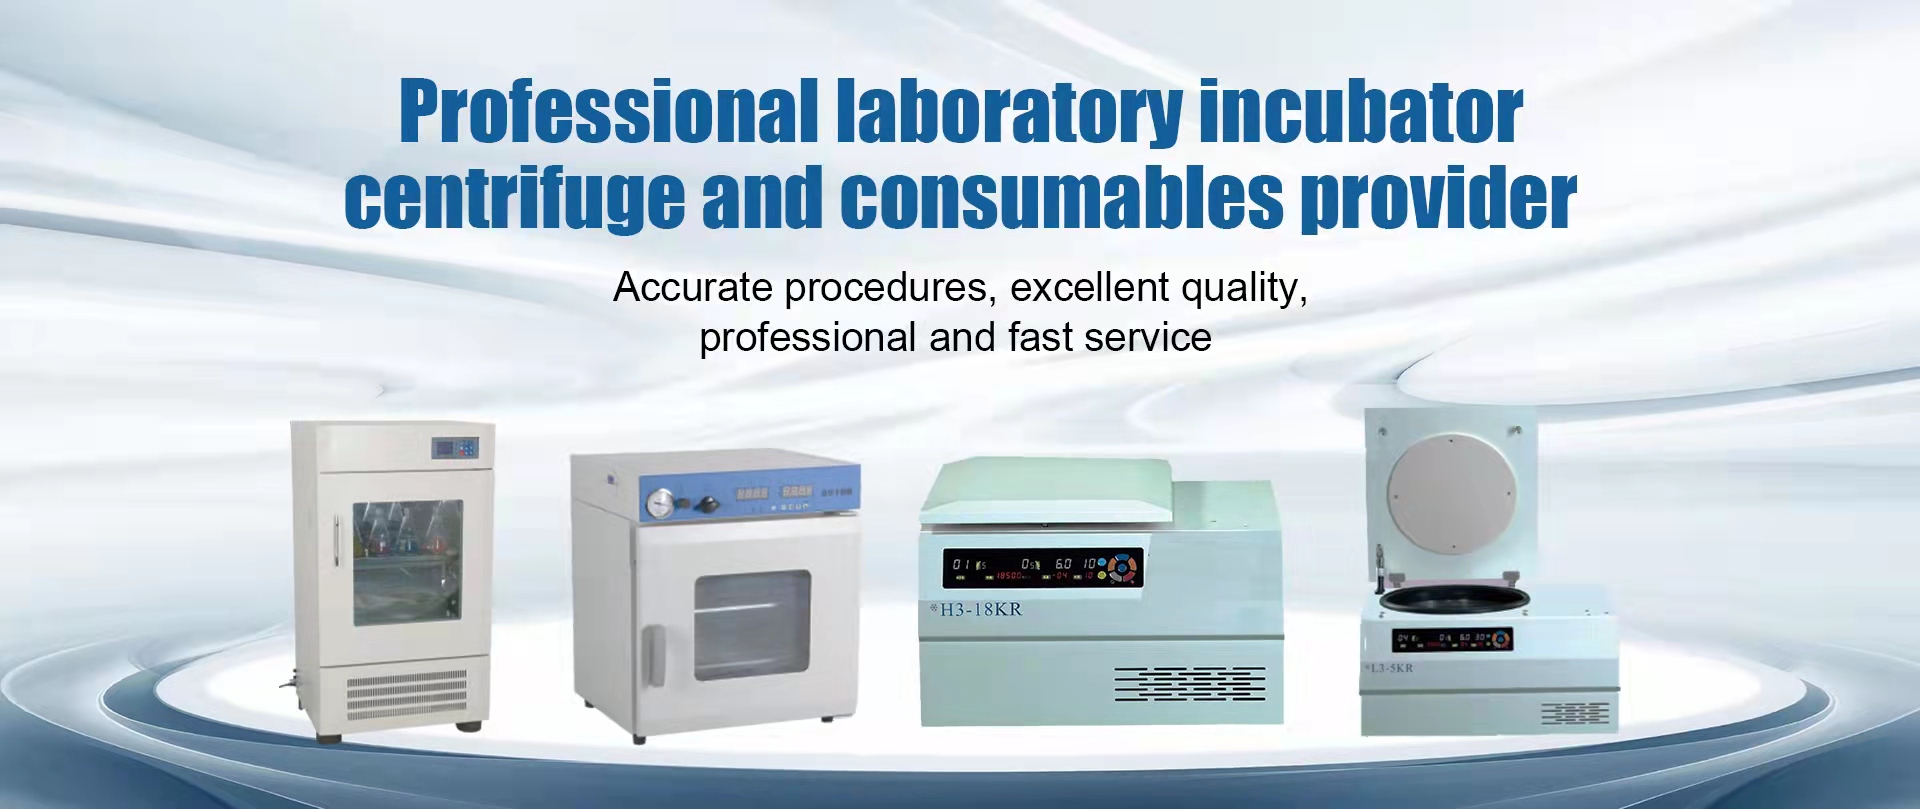 Poskytovatel profesionálních laboratorních inkubátorů, centrifug a spotřebního materiálu